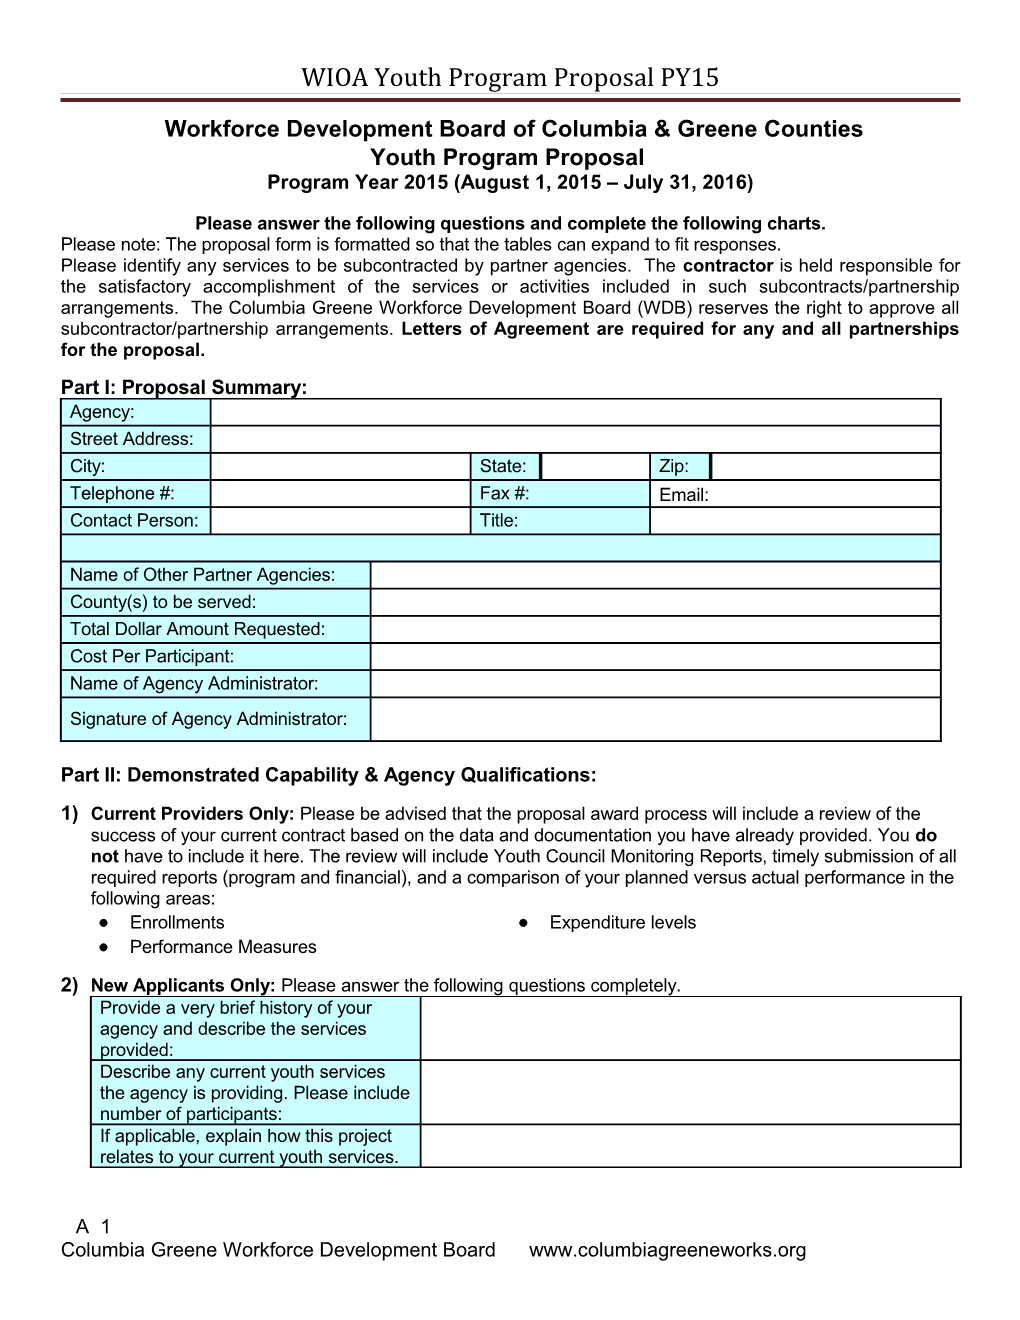 WIOA Youth Program Proposal PY15